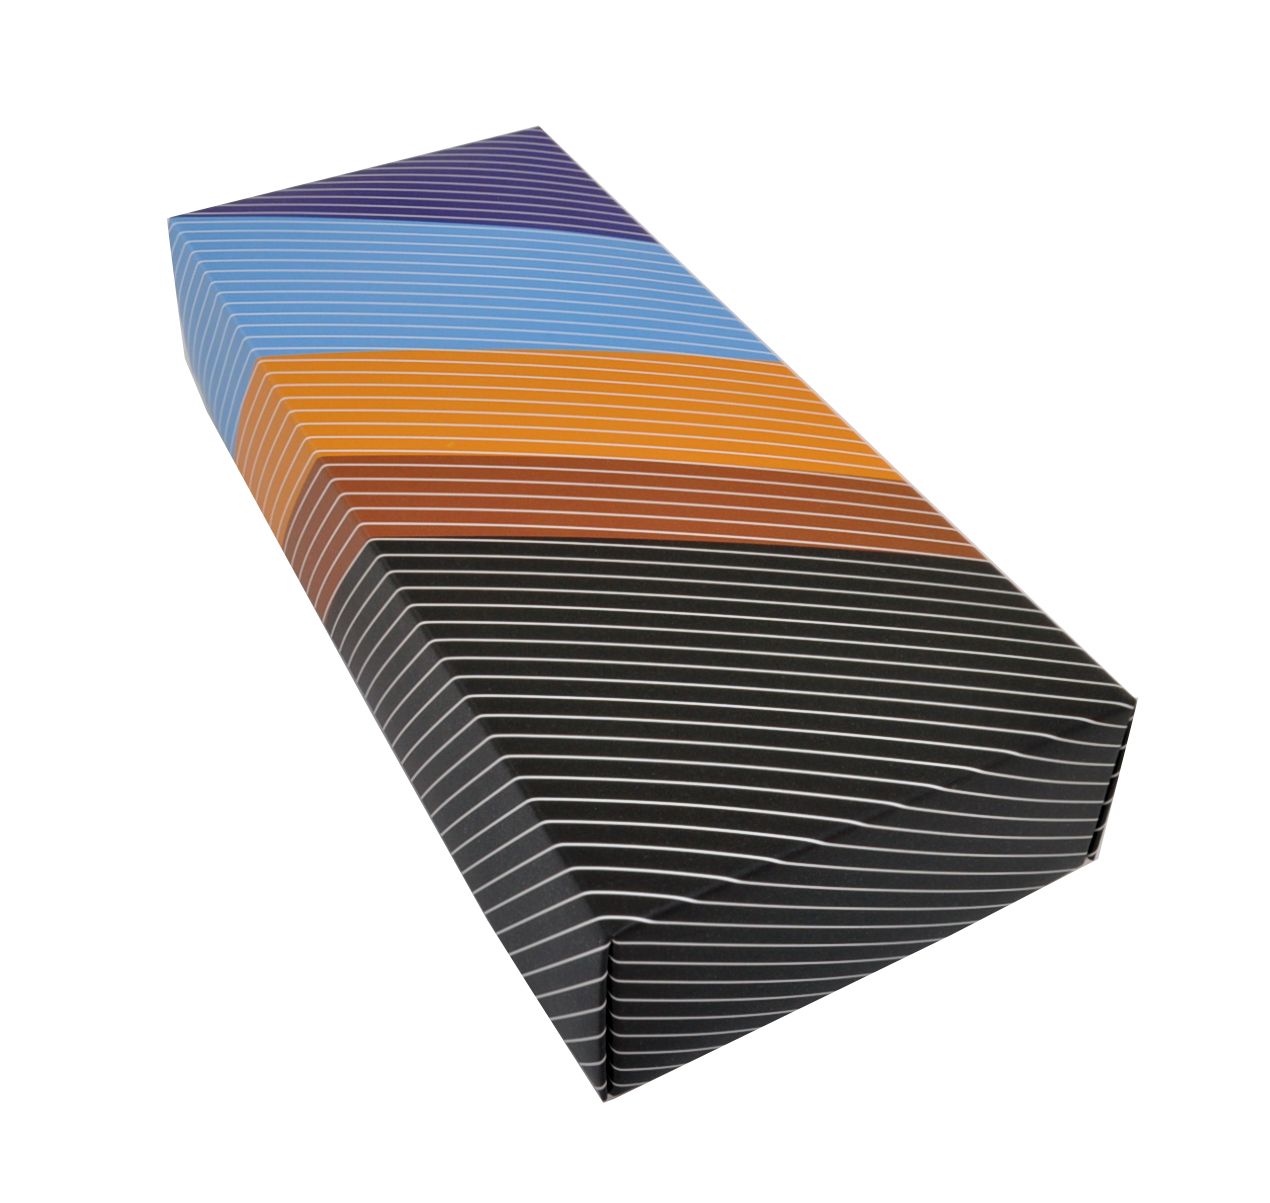 UP49 Коробка для носков с разноцветными полосками описание: Состав - Картон, Цвет - Черный, оранжевый, голубой, Размеры - ШхВхТ: 9,5 см х 22,5 см х 4,5 см, Вес - , Стоимость - 250 руб руб.;